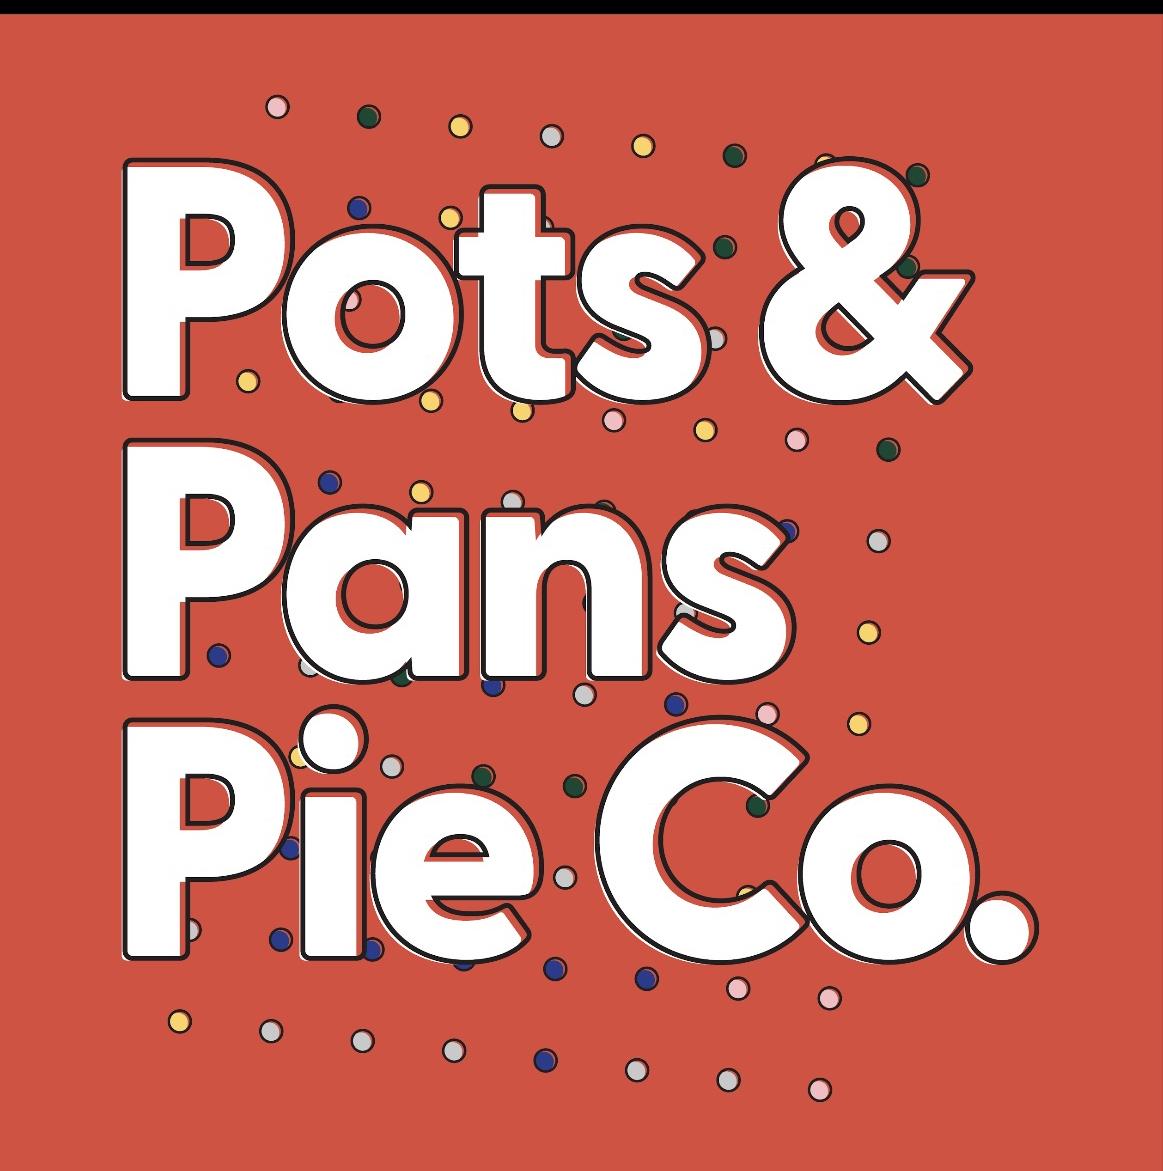 Pots&Pans PieCo's images